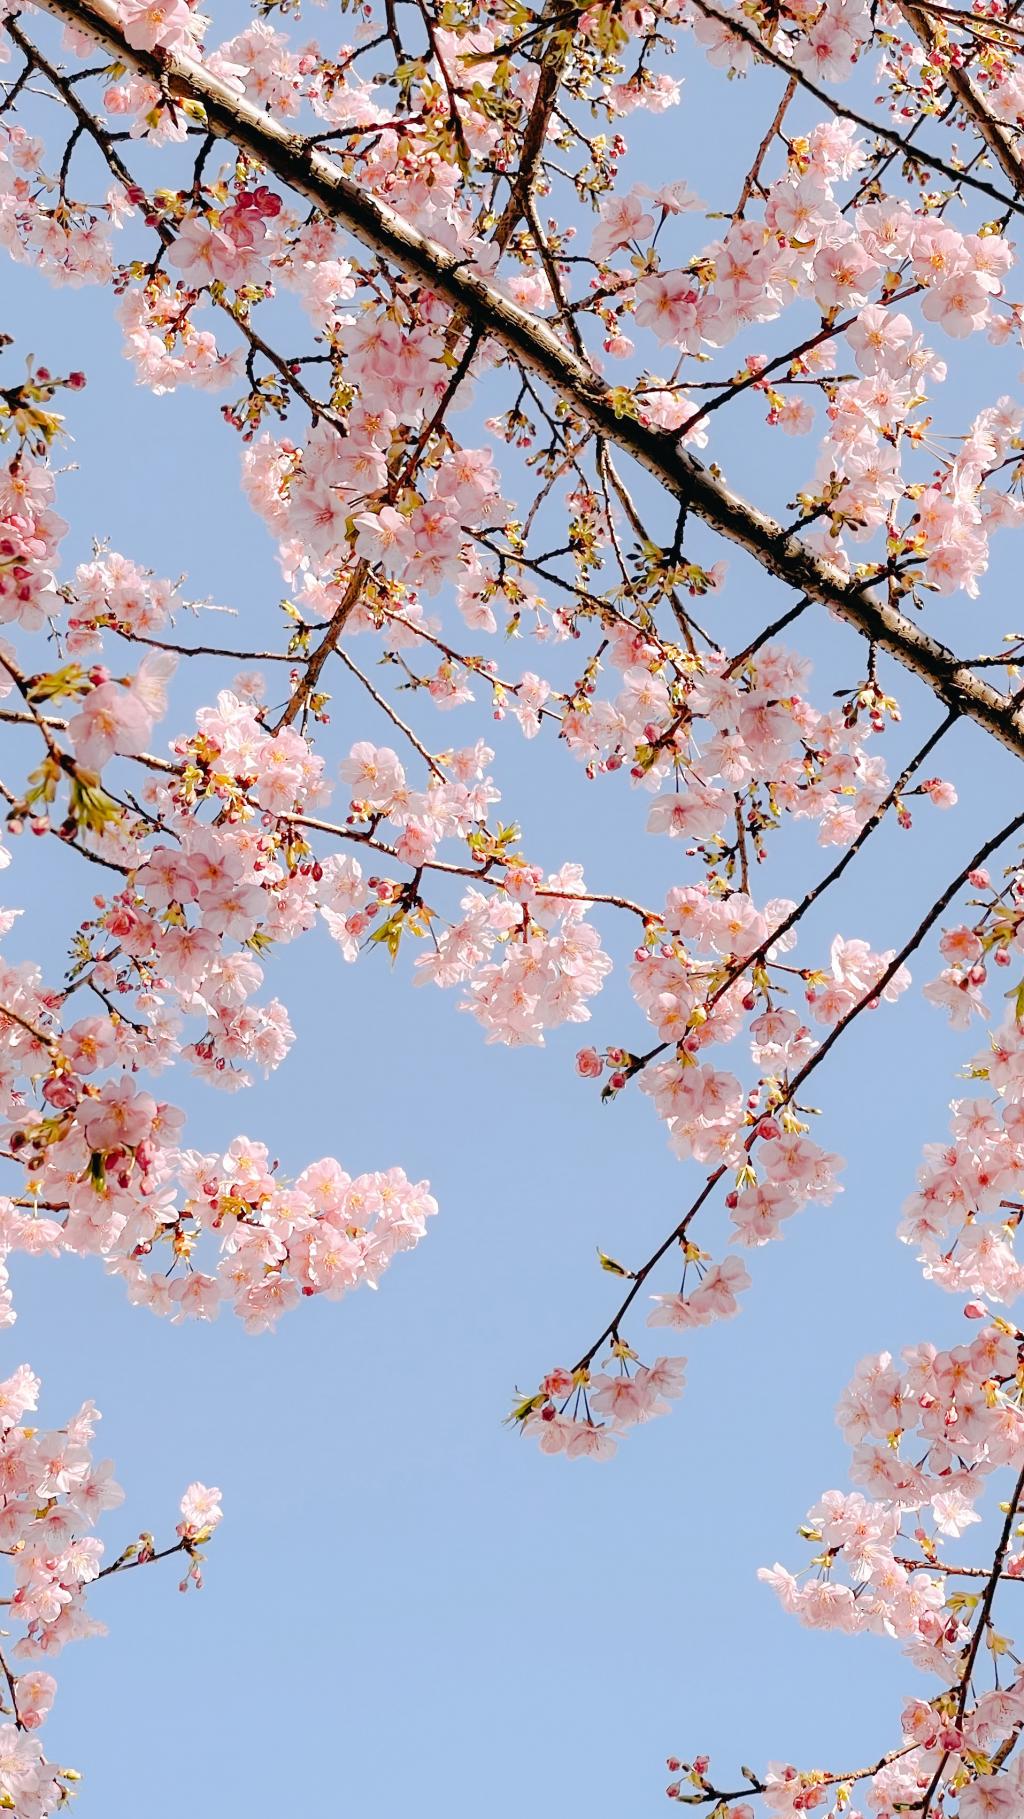 粉嫩娇小的樱花美景